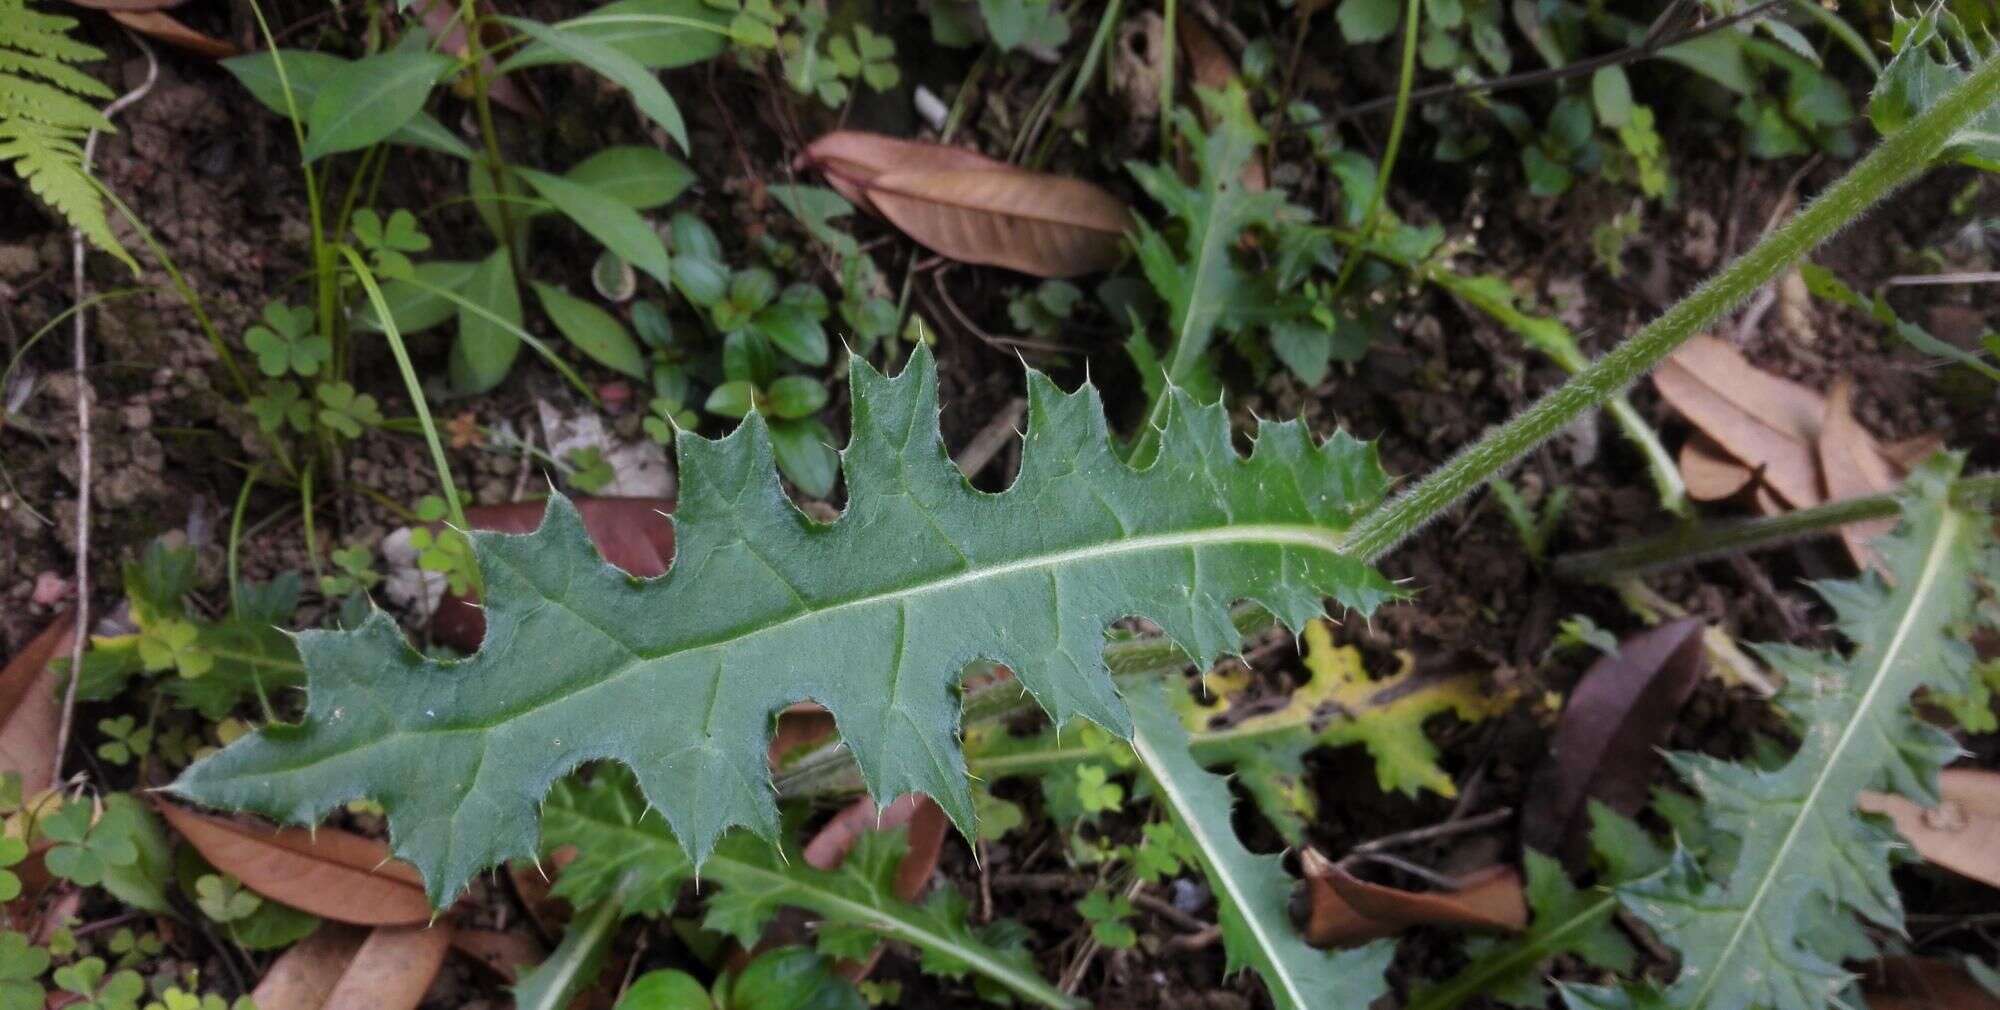 这种叶子长满刺的植物名叫大蓟 用处很多 看到好好利用 楠木轩